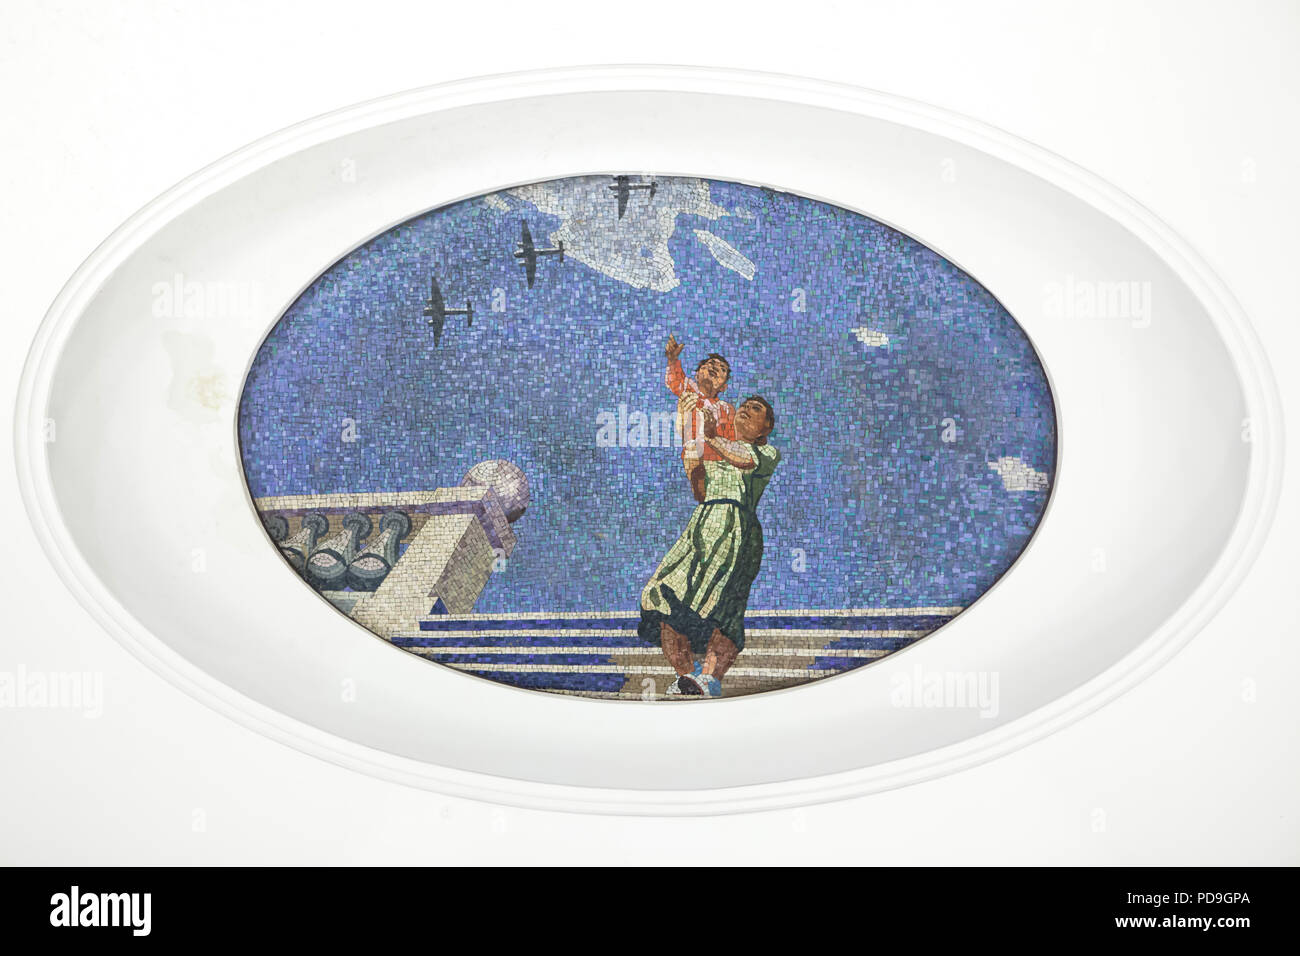 Mutter und Kind auf Flugzeuge, die in den Himmel in der Decke Mosaik von sowjetischen Künstler Alexander Deyneka im U-Bahnhof Majakowskaja in Moskau, Rußland, mit dargestellt. Eines der Mosaike aus der dargelegten vierundzwanzig Stunden in den sowjetischen Luftraum von Russischen Mosaik master Vladimir Frolov im Jahre 1930 montiert. Stockfoto